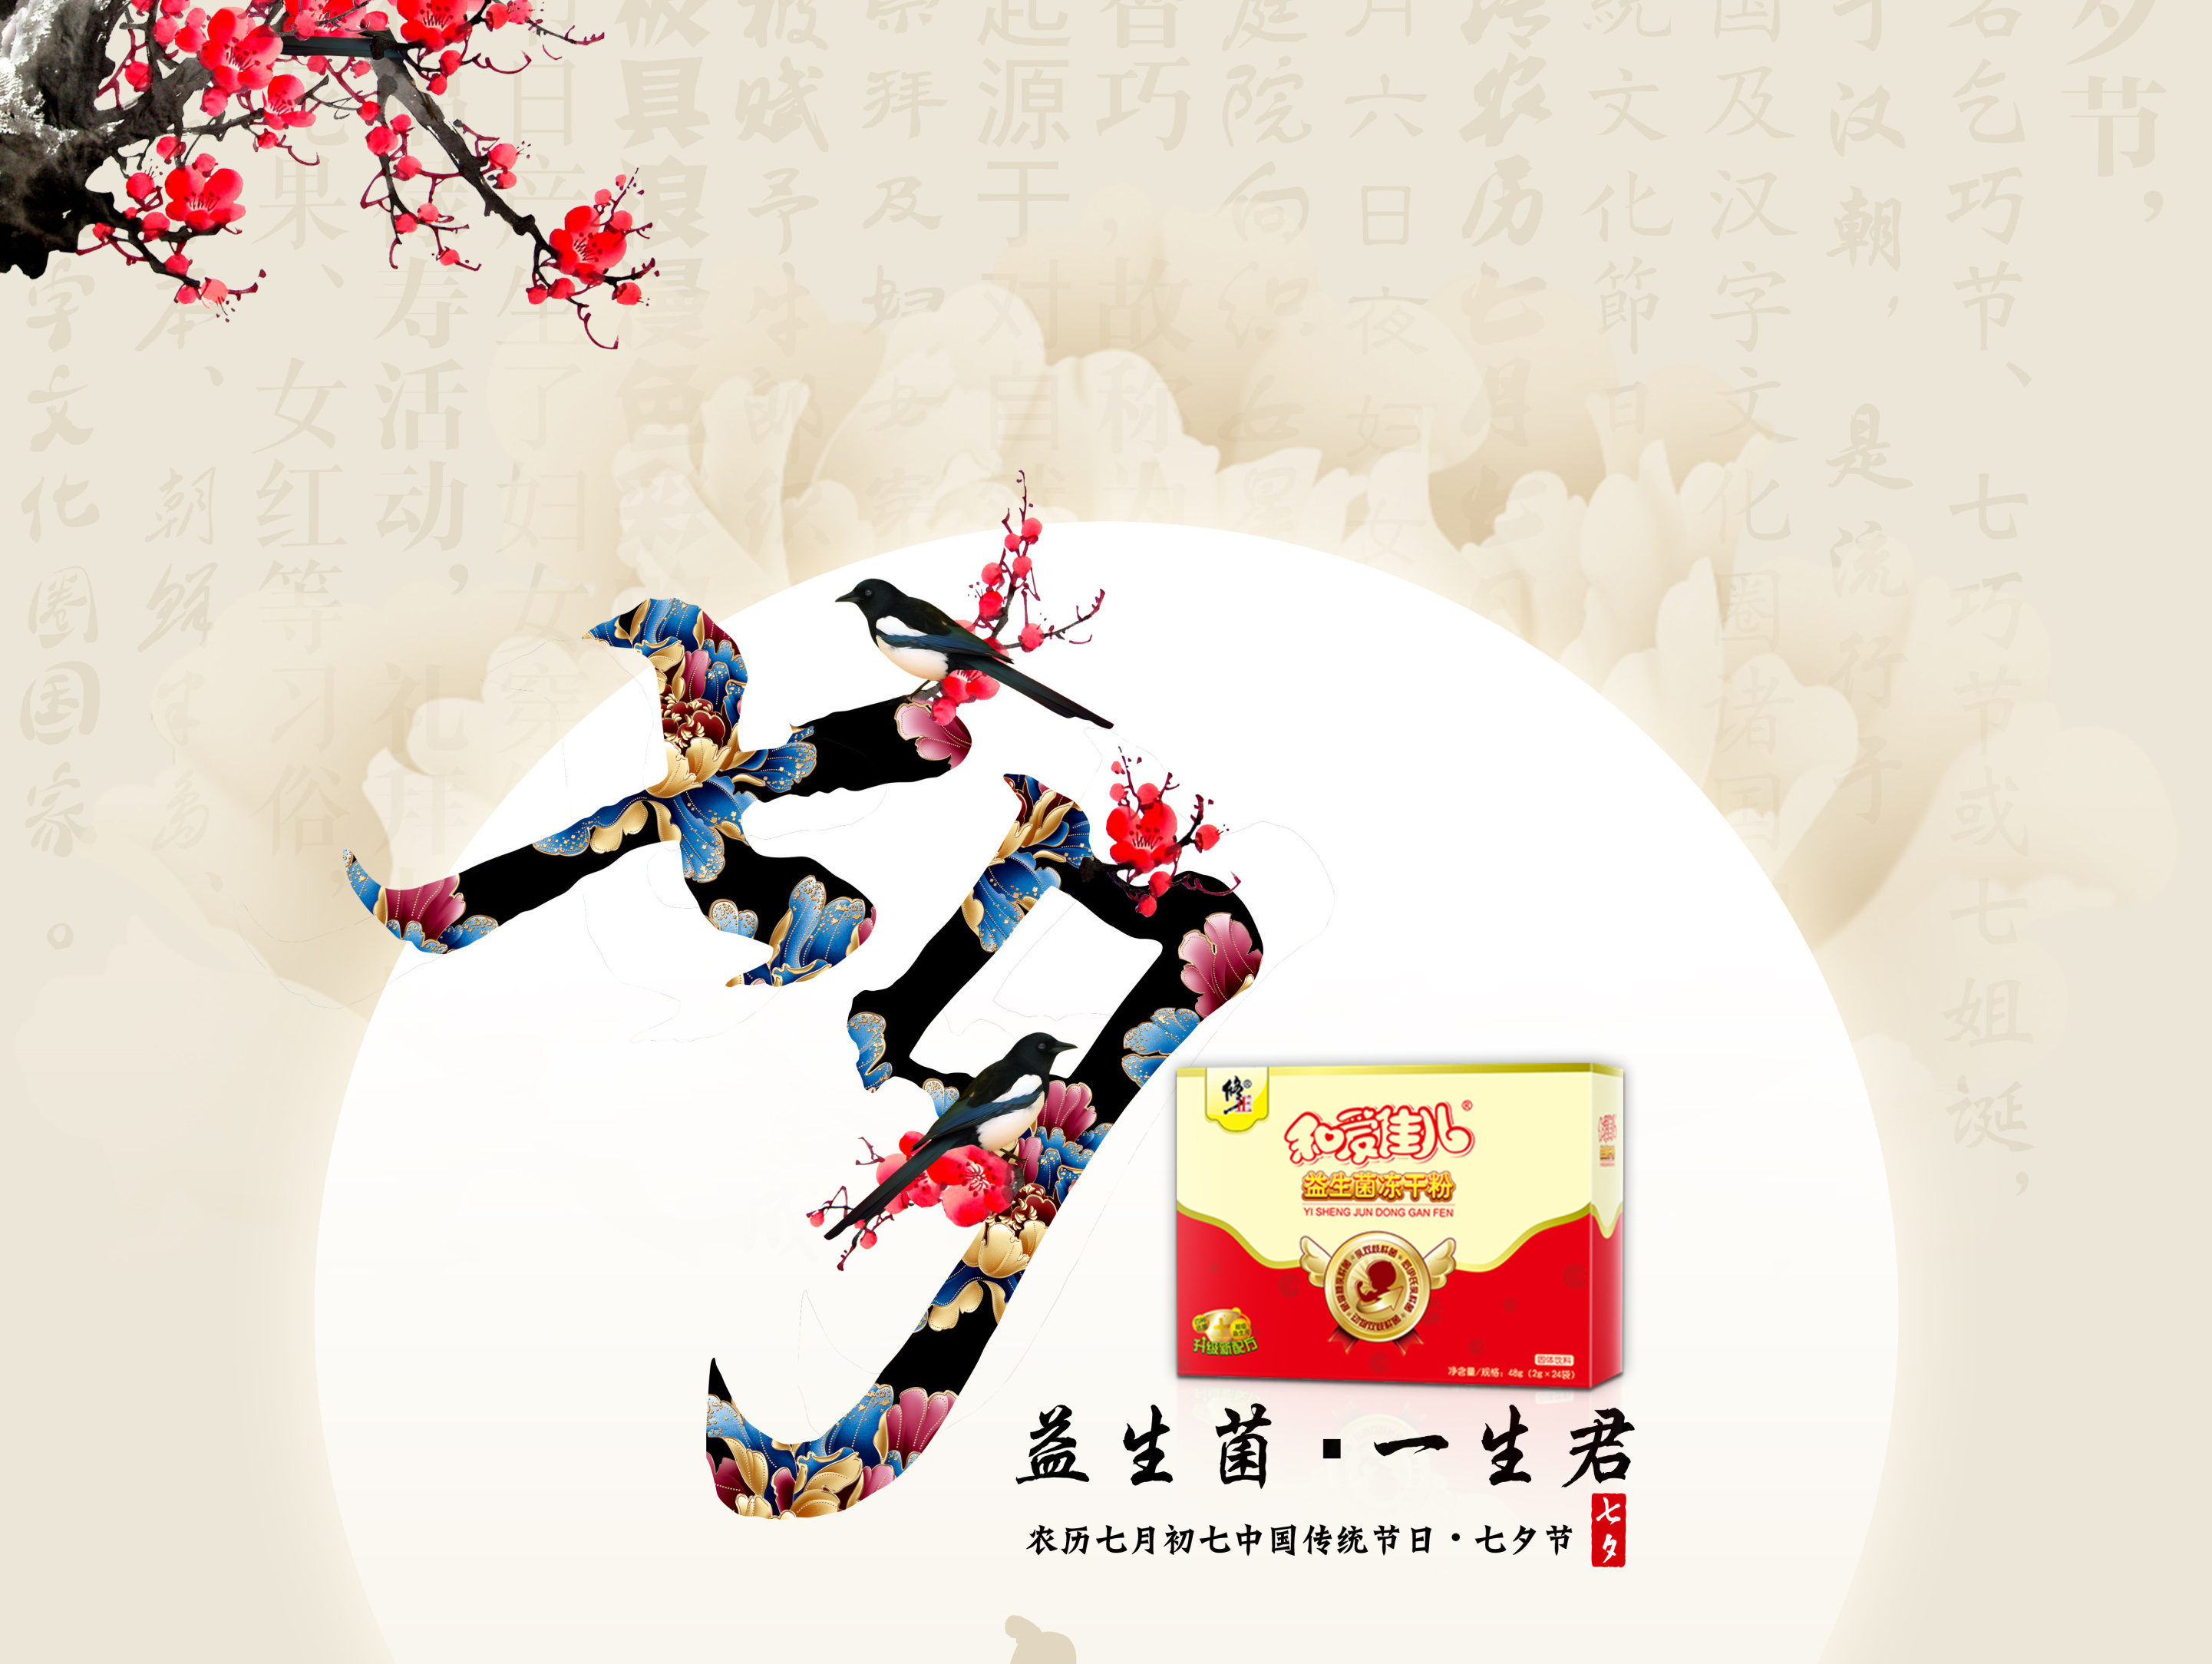 修正药业集团系列外用OTC药品包装设计图片 _北京西风东韵设计公司